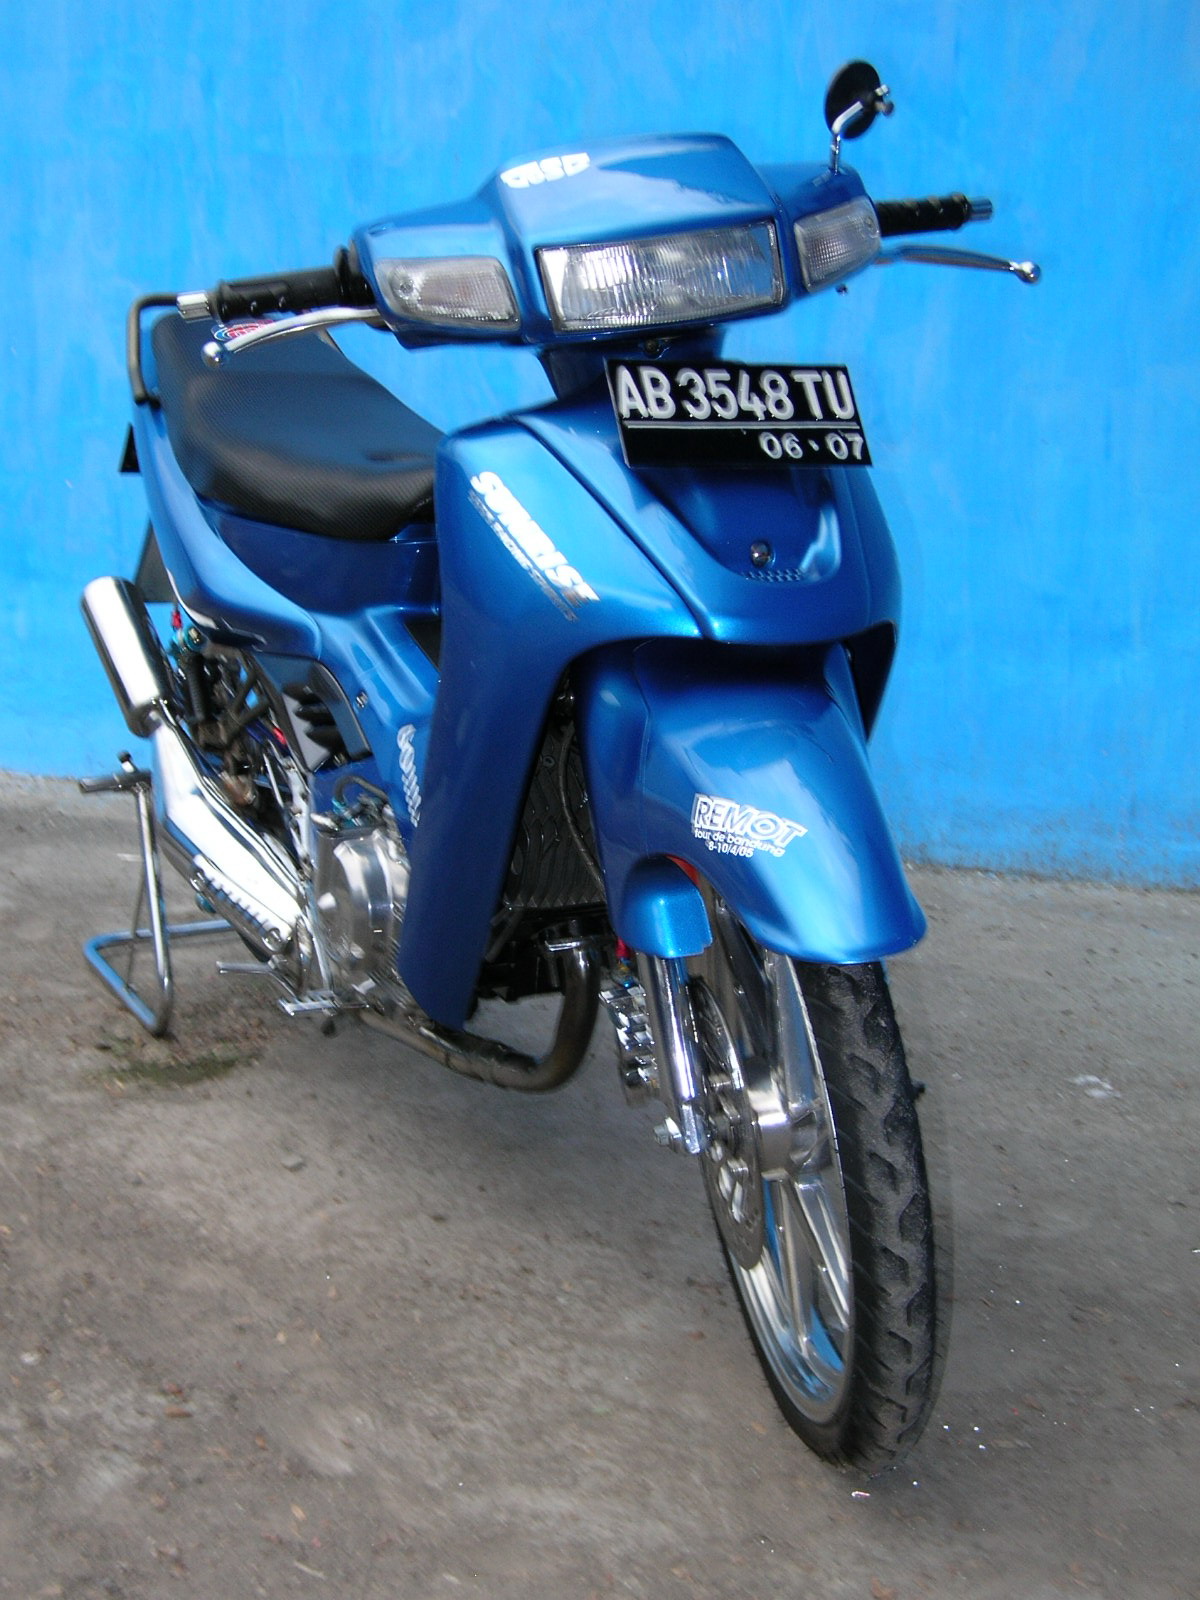 Modif suzuki satria blue color airbrush  motor modif 